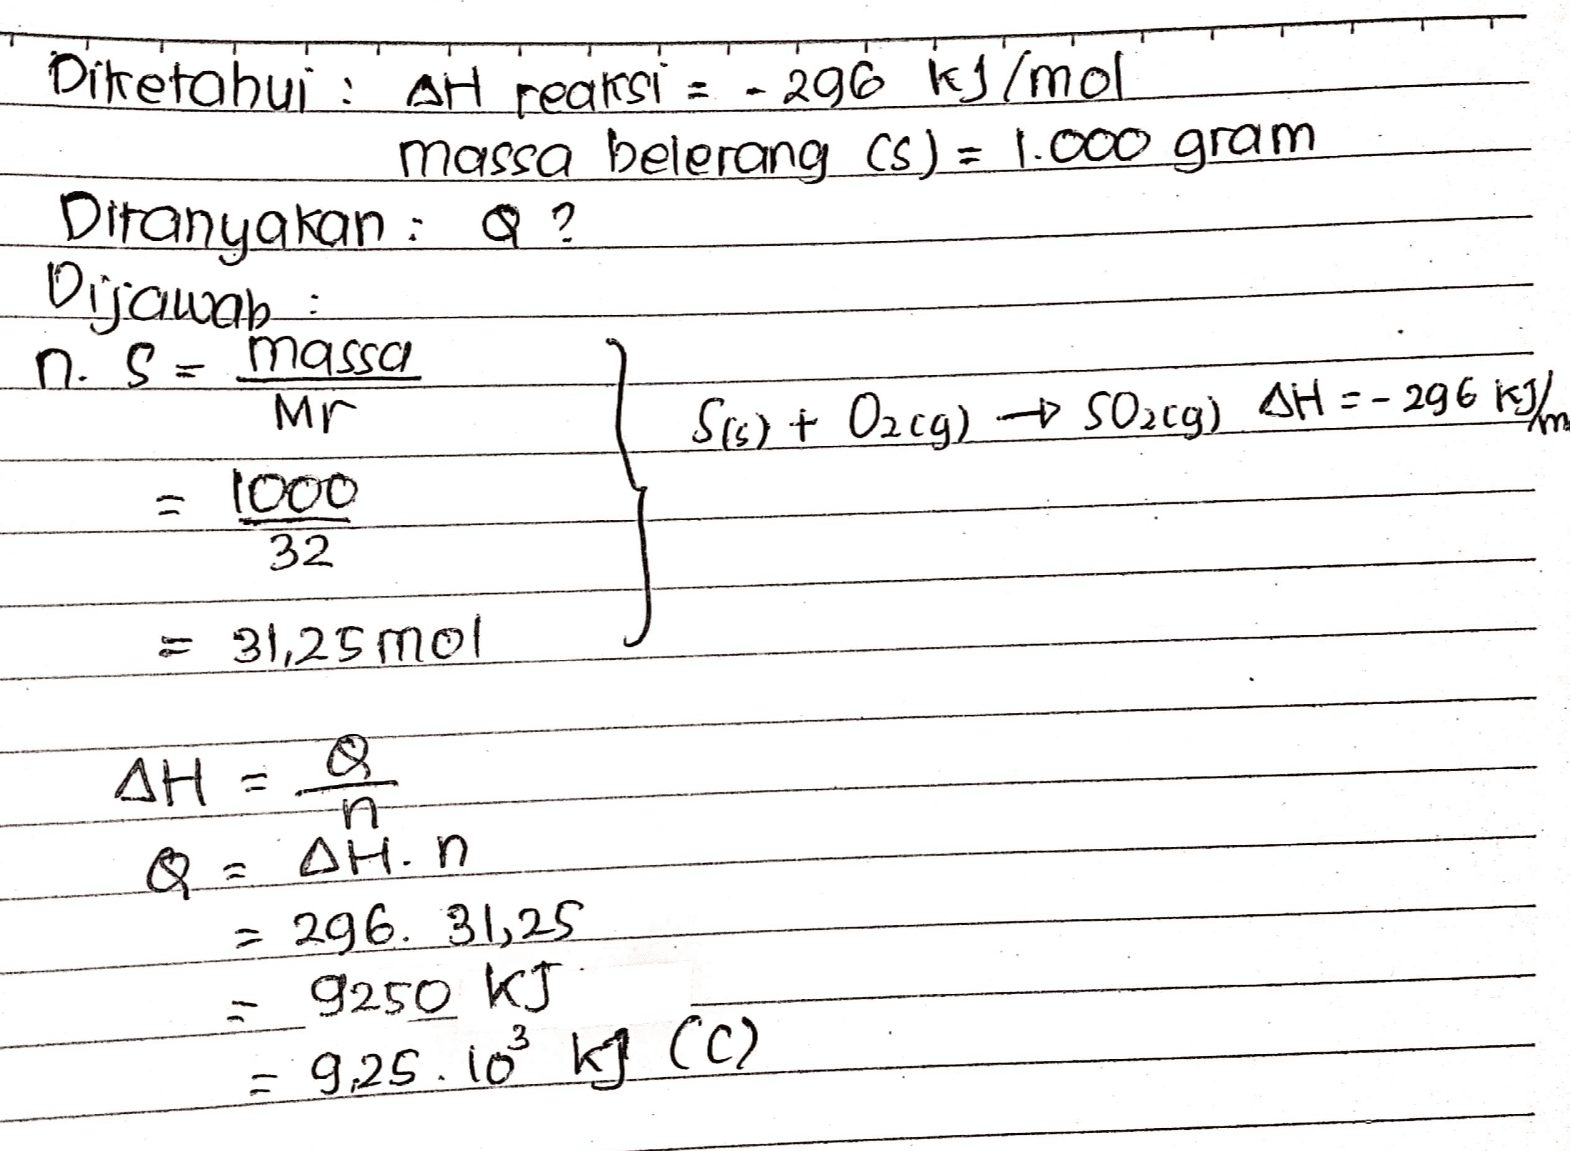 Ditetahui : : AH reaksi - 296 kg/mol massa belerang (5) = 1.000 gram Ditanyakan : Q? Dijawab n. S = massa Mr Sis) + O2cg) - S02c9) AH =- 296 km = 1000 32 = 31,25 mol ΔΗ n Q_ AH.n = 296. 31,25 9250 kJ 9,25.103 kg (C) 